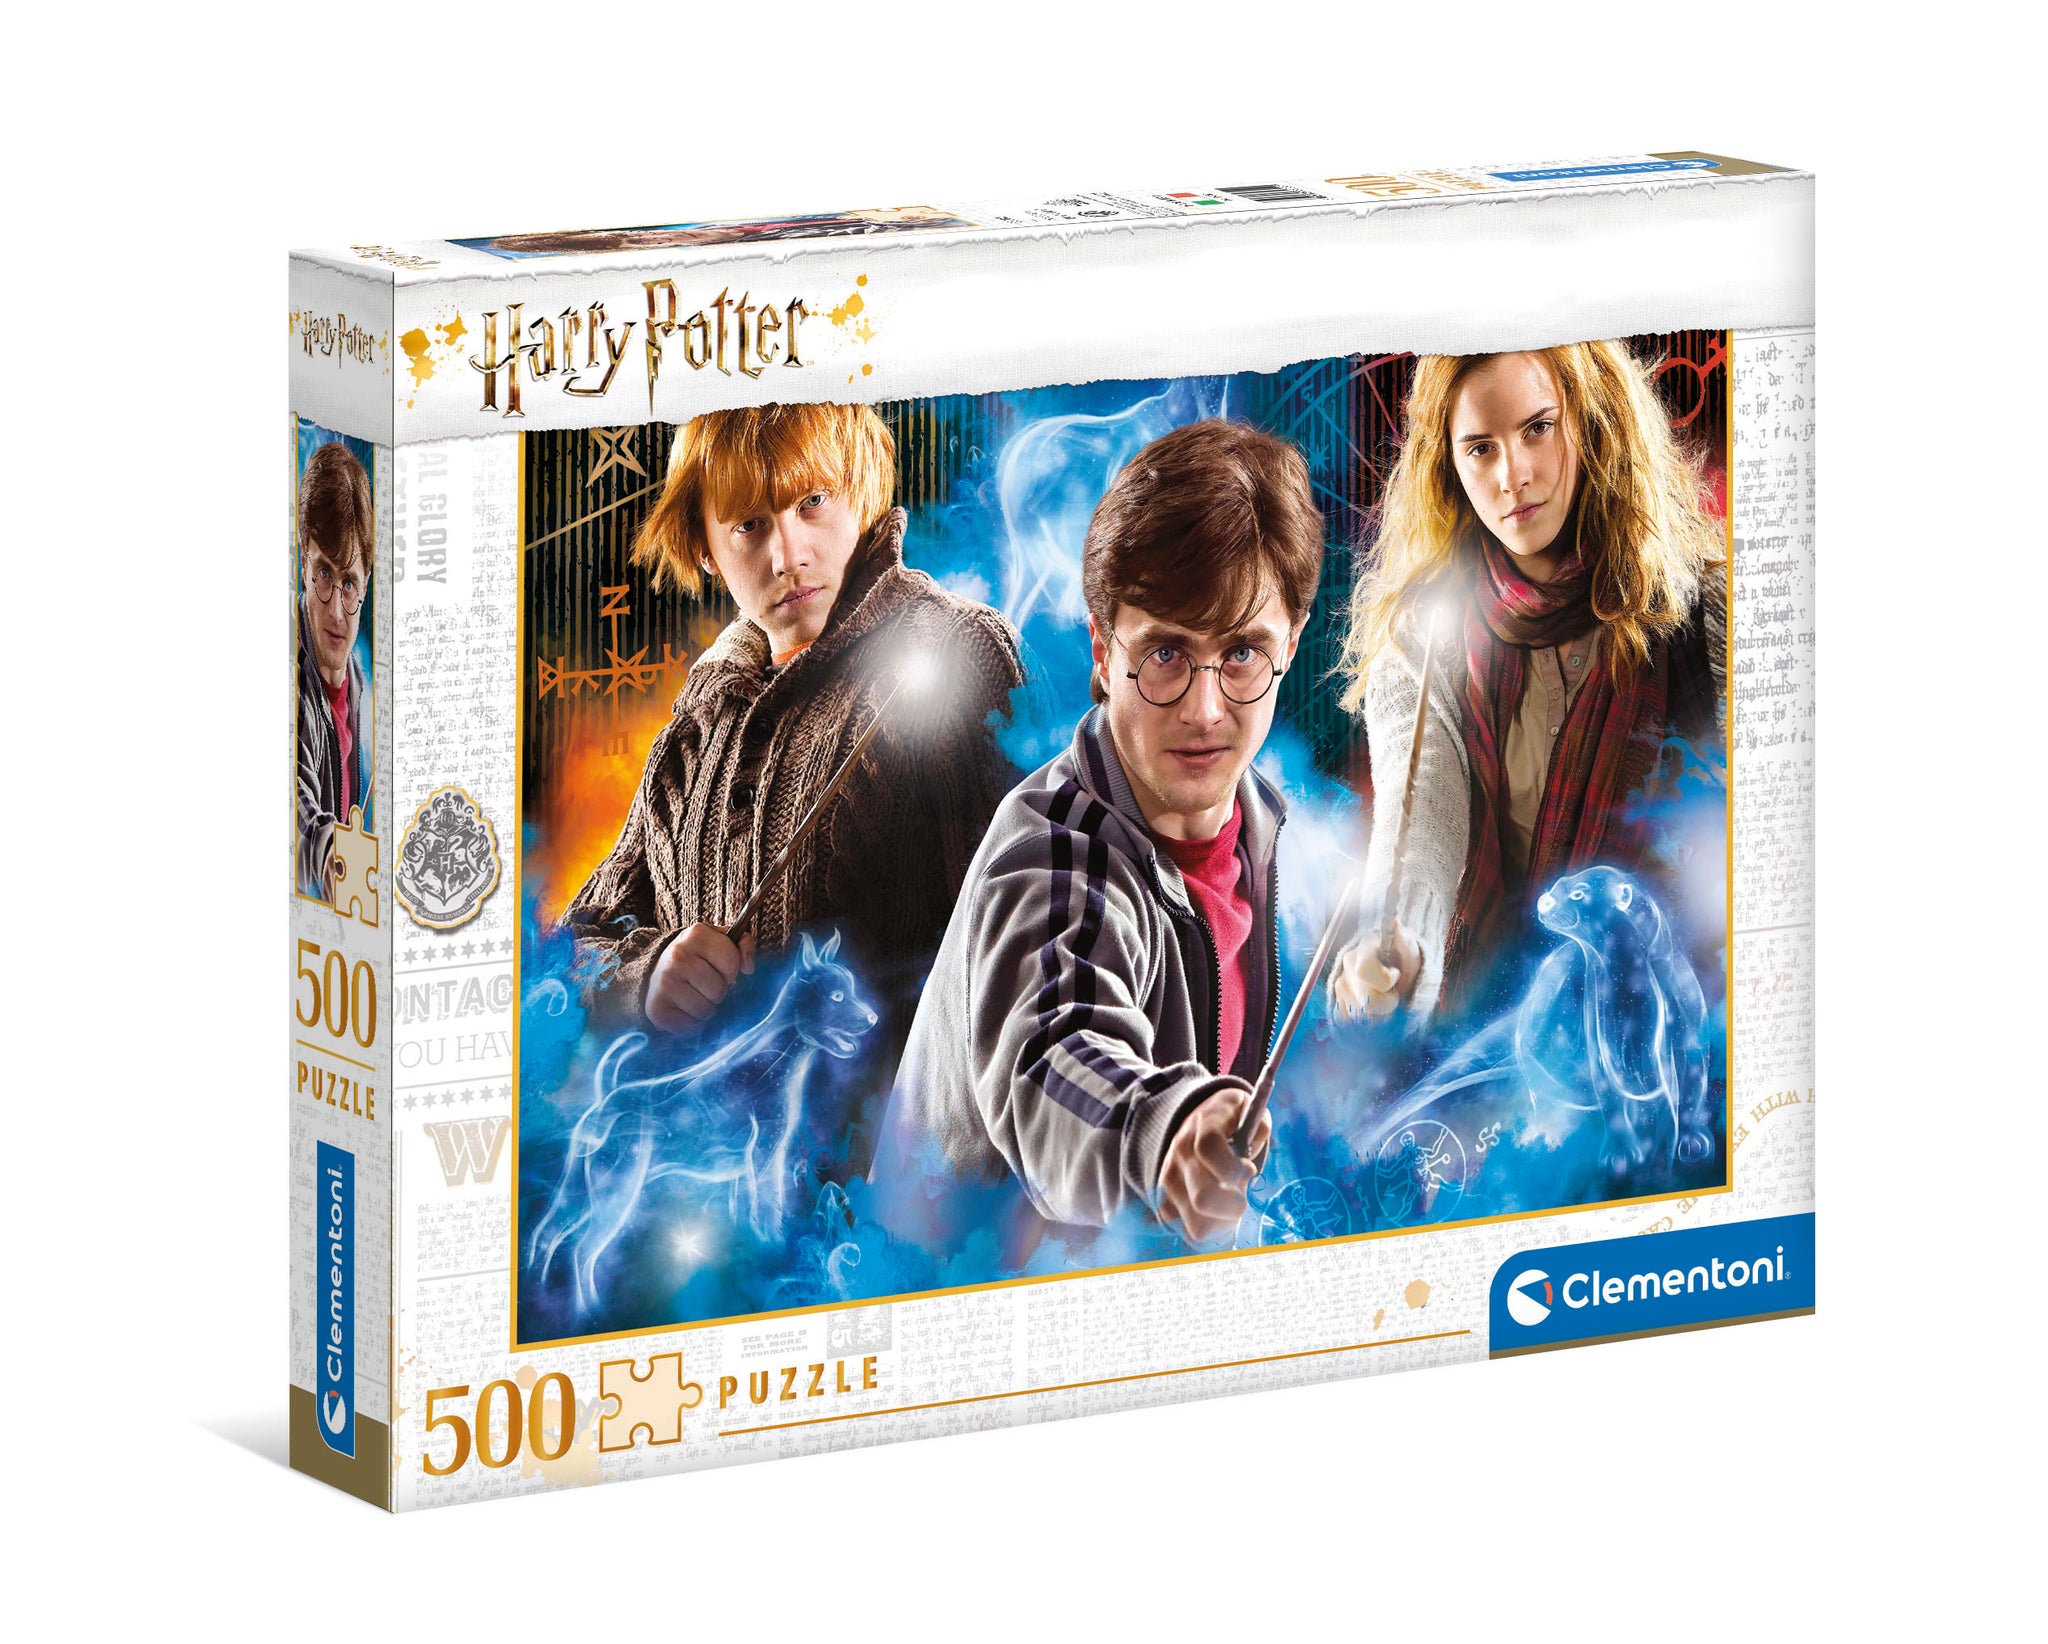 Clementoni Harry Potter Puzzle (500 Pieces)